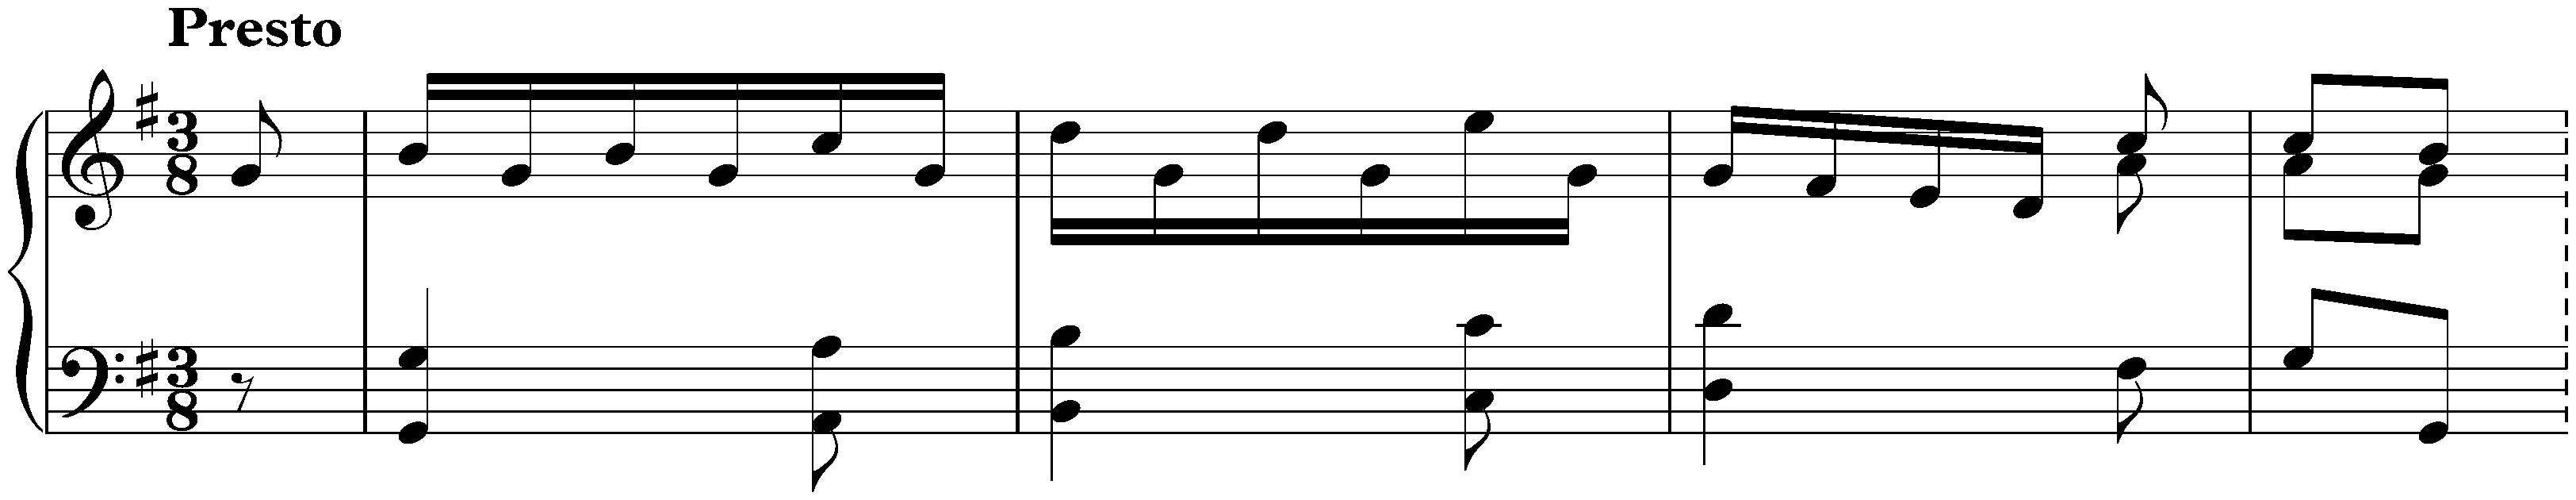 Sonata in G major, Hob. XVI:11; 1. Presto